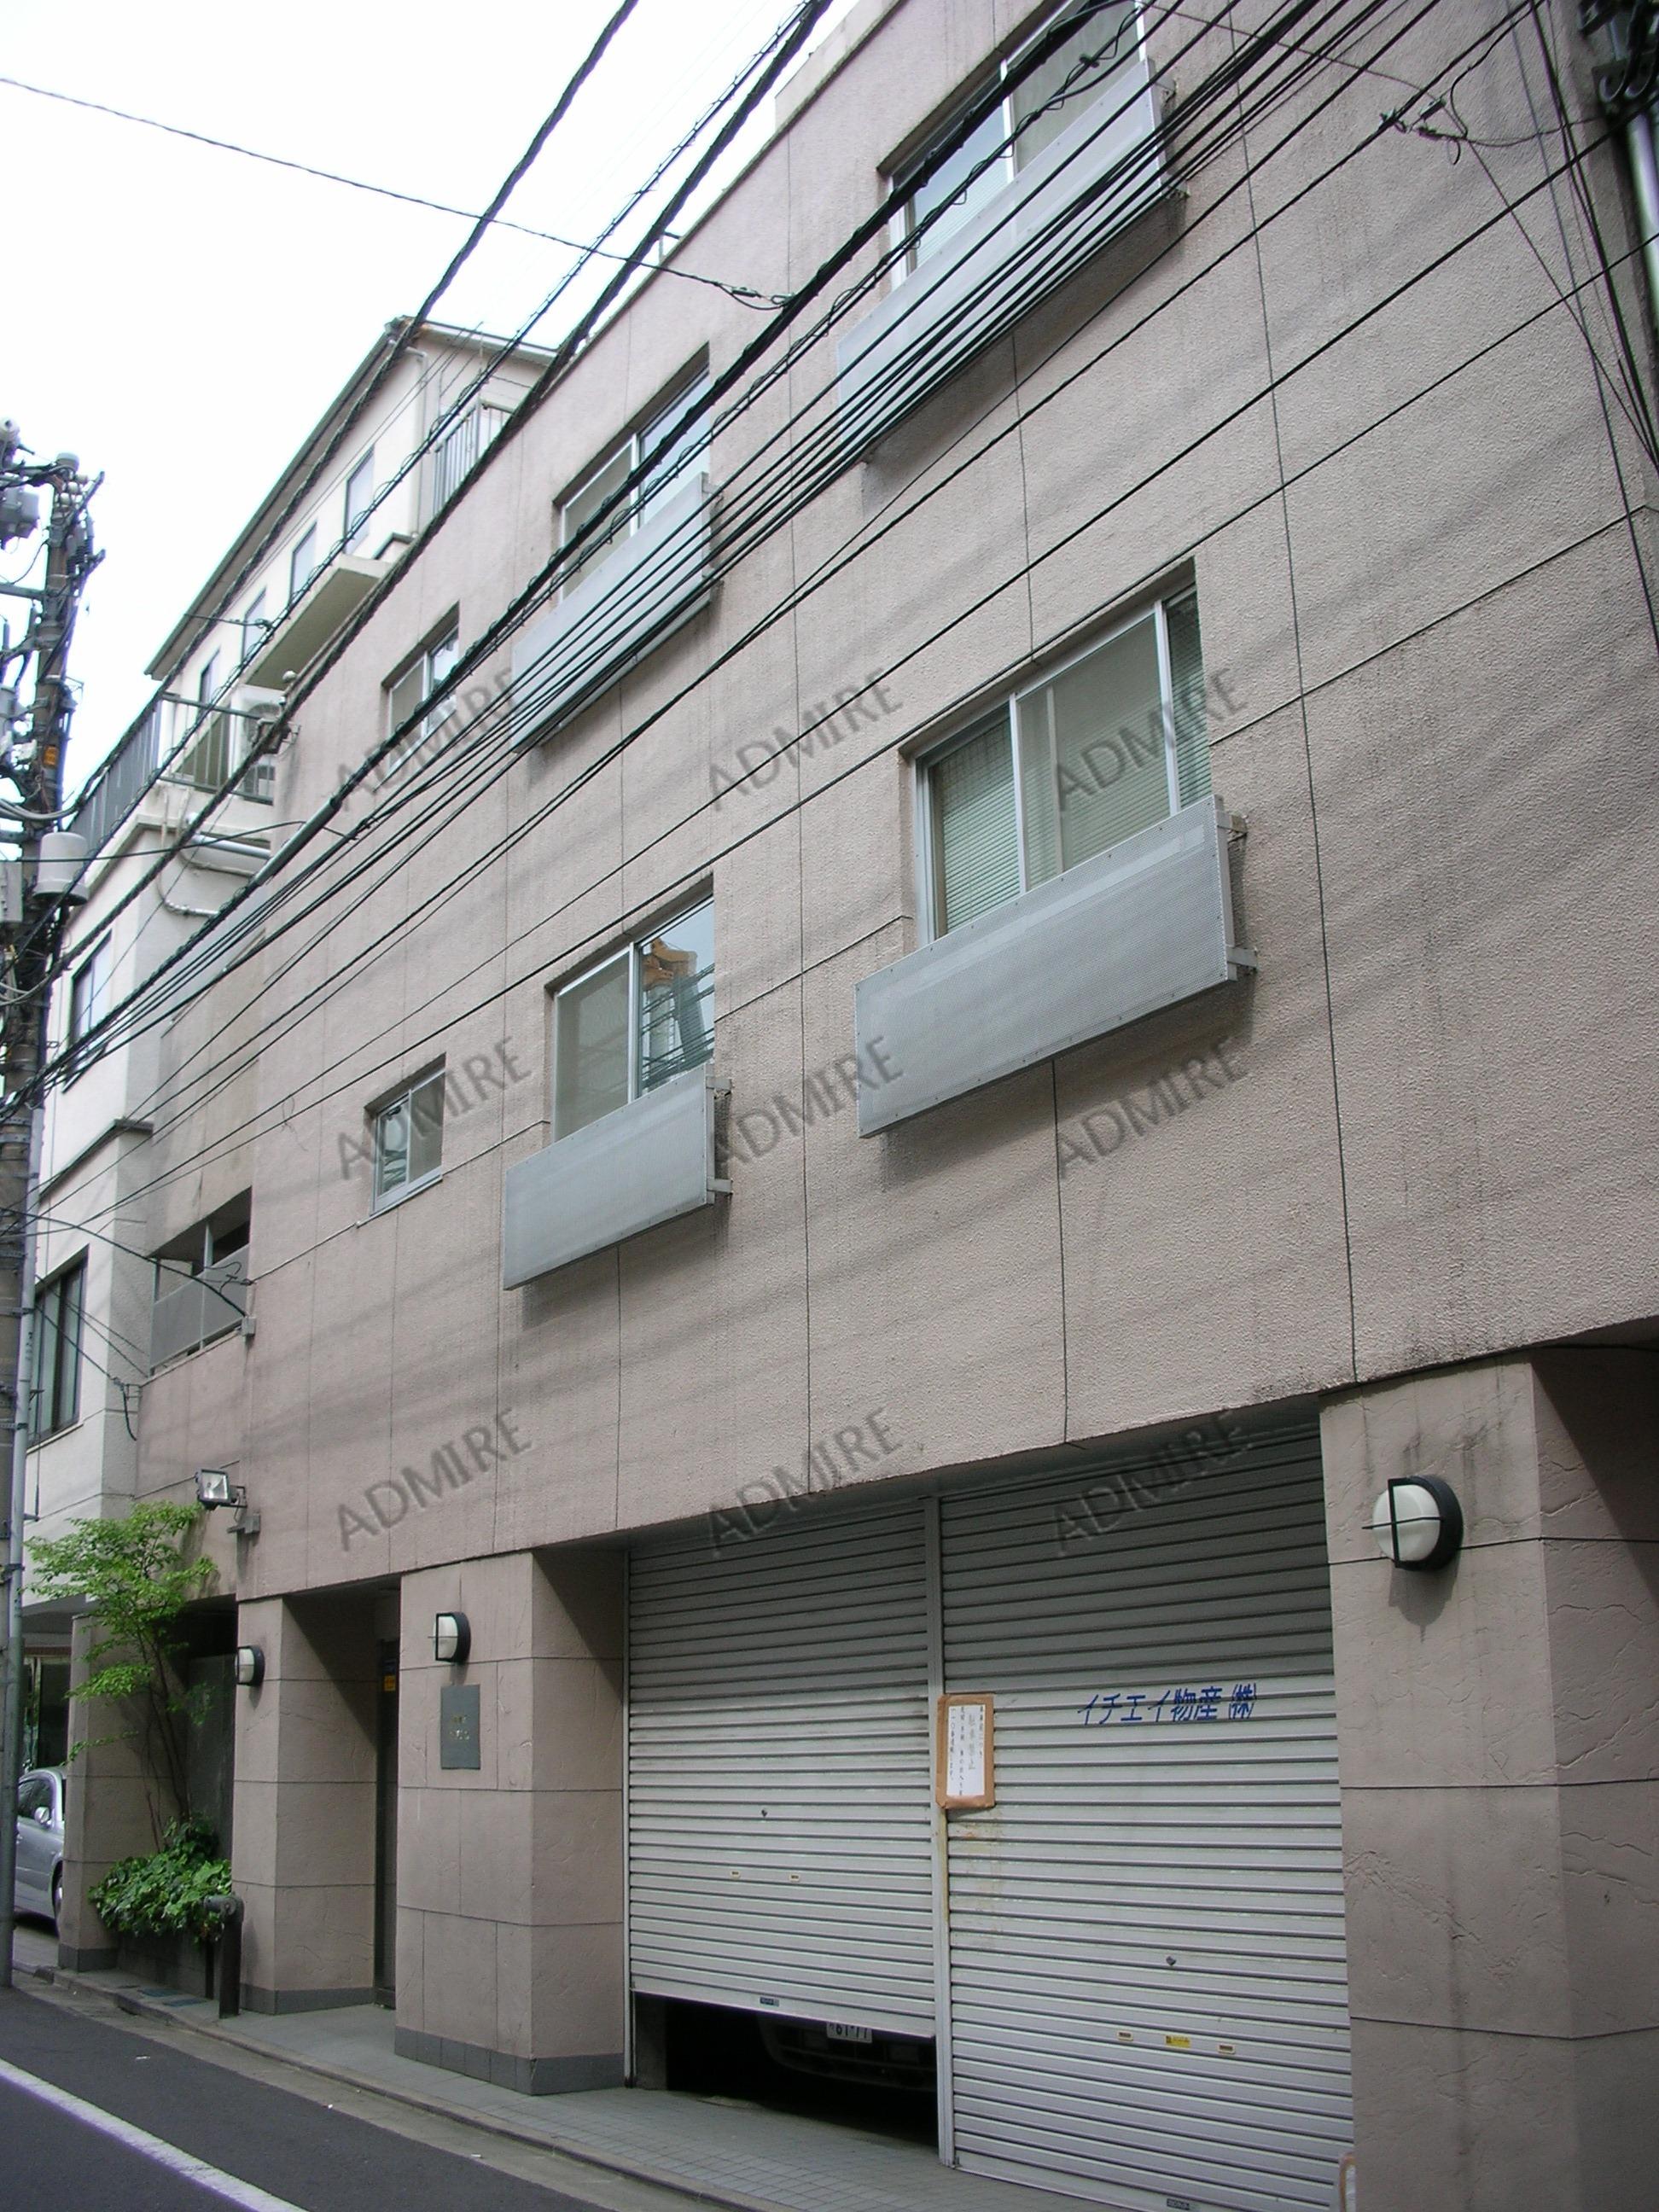 ホームズ 新宿5アドレスの建物情報 東京都新宿区新宿5丁目8 10